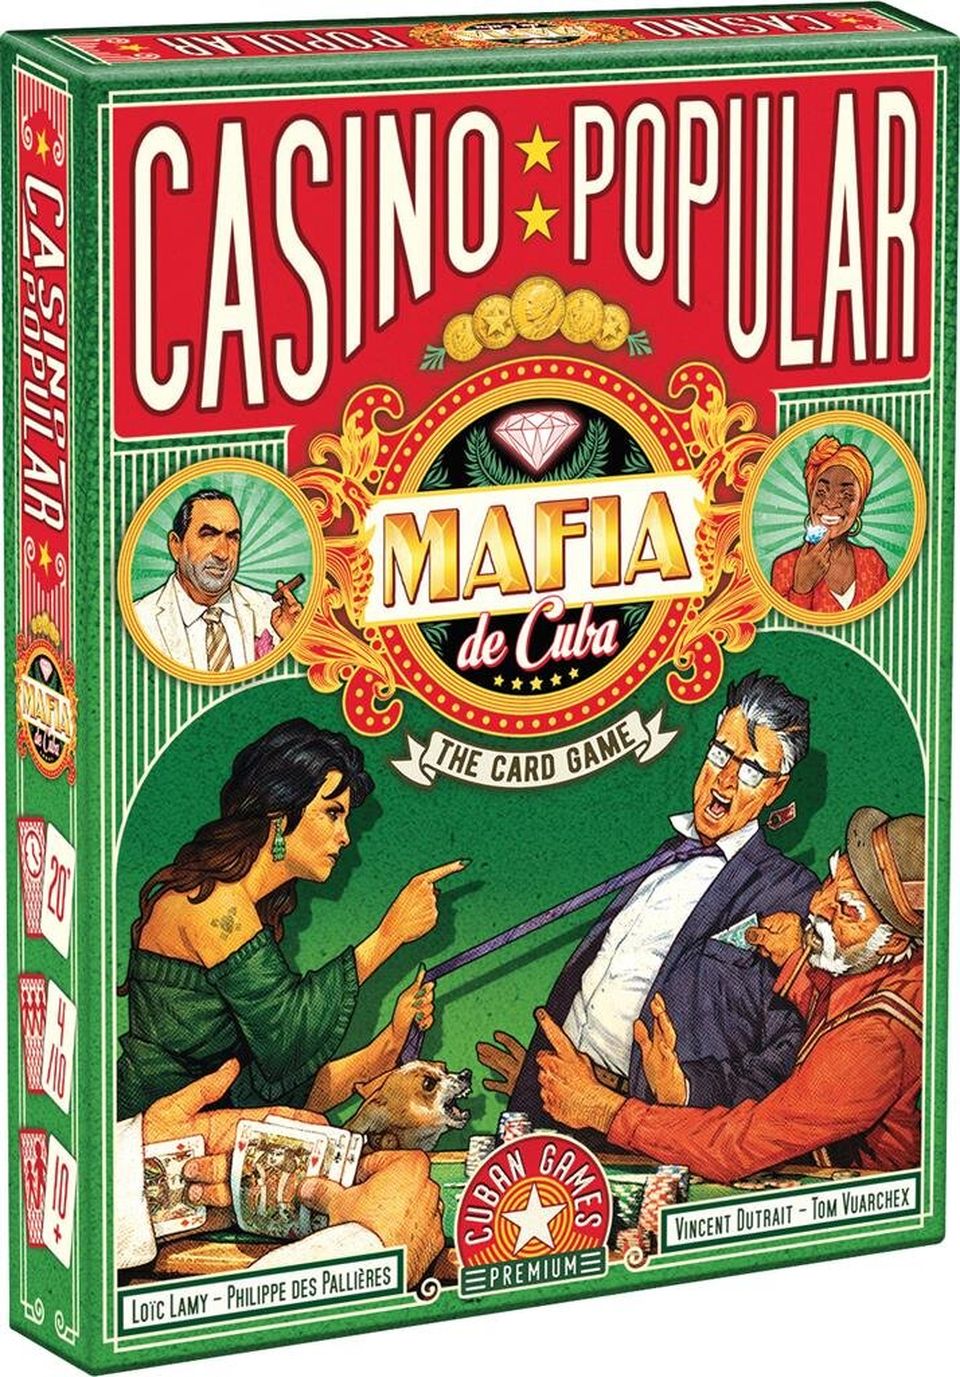 Mafia de Cuba Casino Popular image